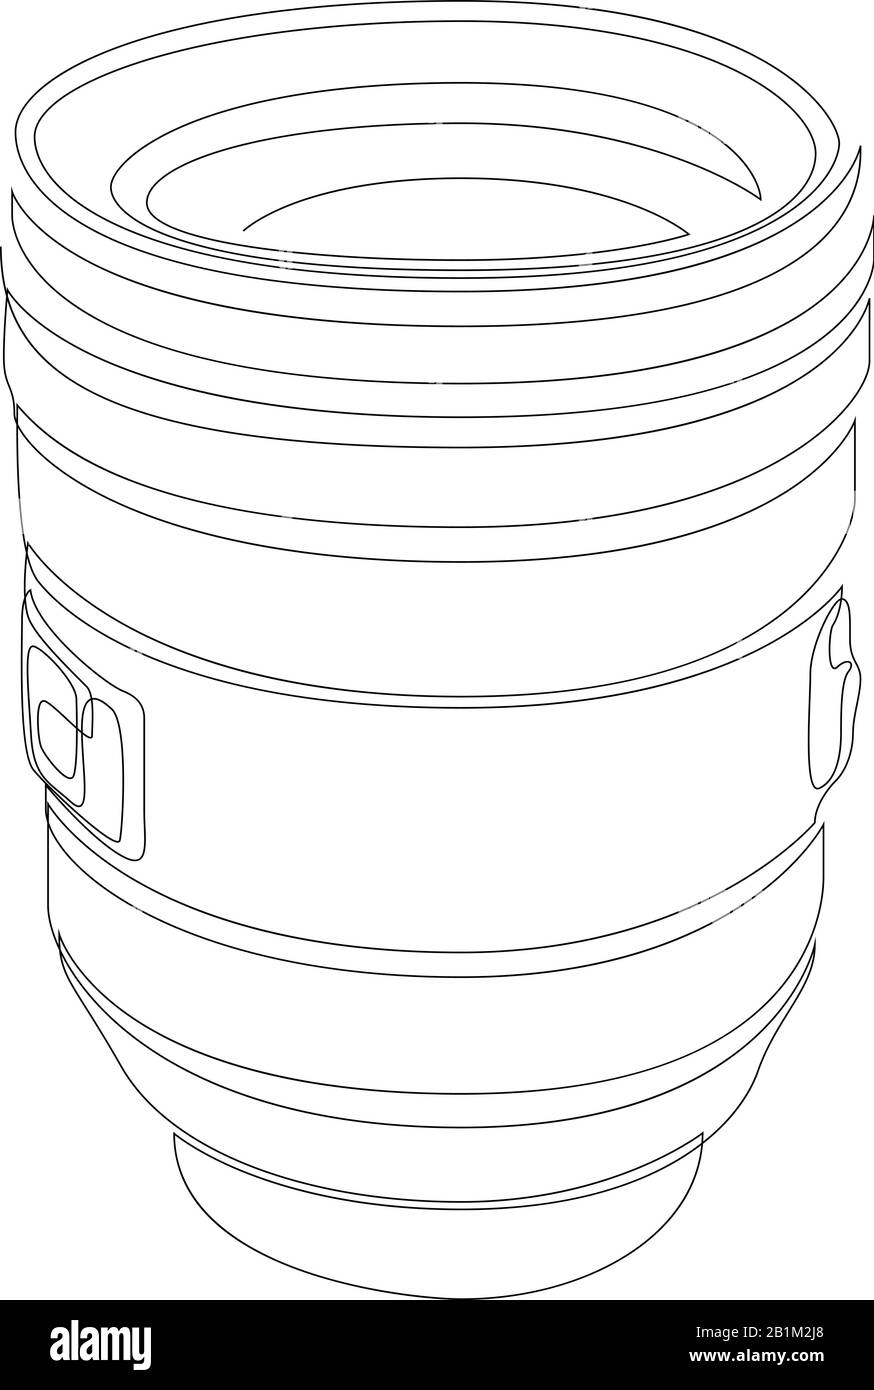 Un dibujo de una sola línea de una lente slr o dslr. Ilustración de diseño de dibujo de línea continua de concepto de equipo fotográfico. Vector Ilustración del Vector